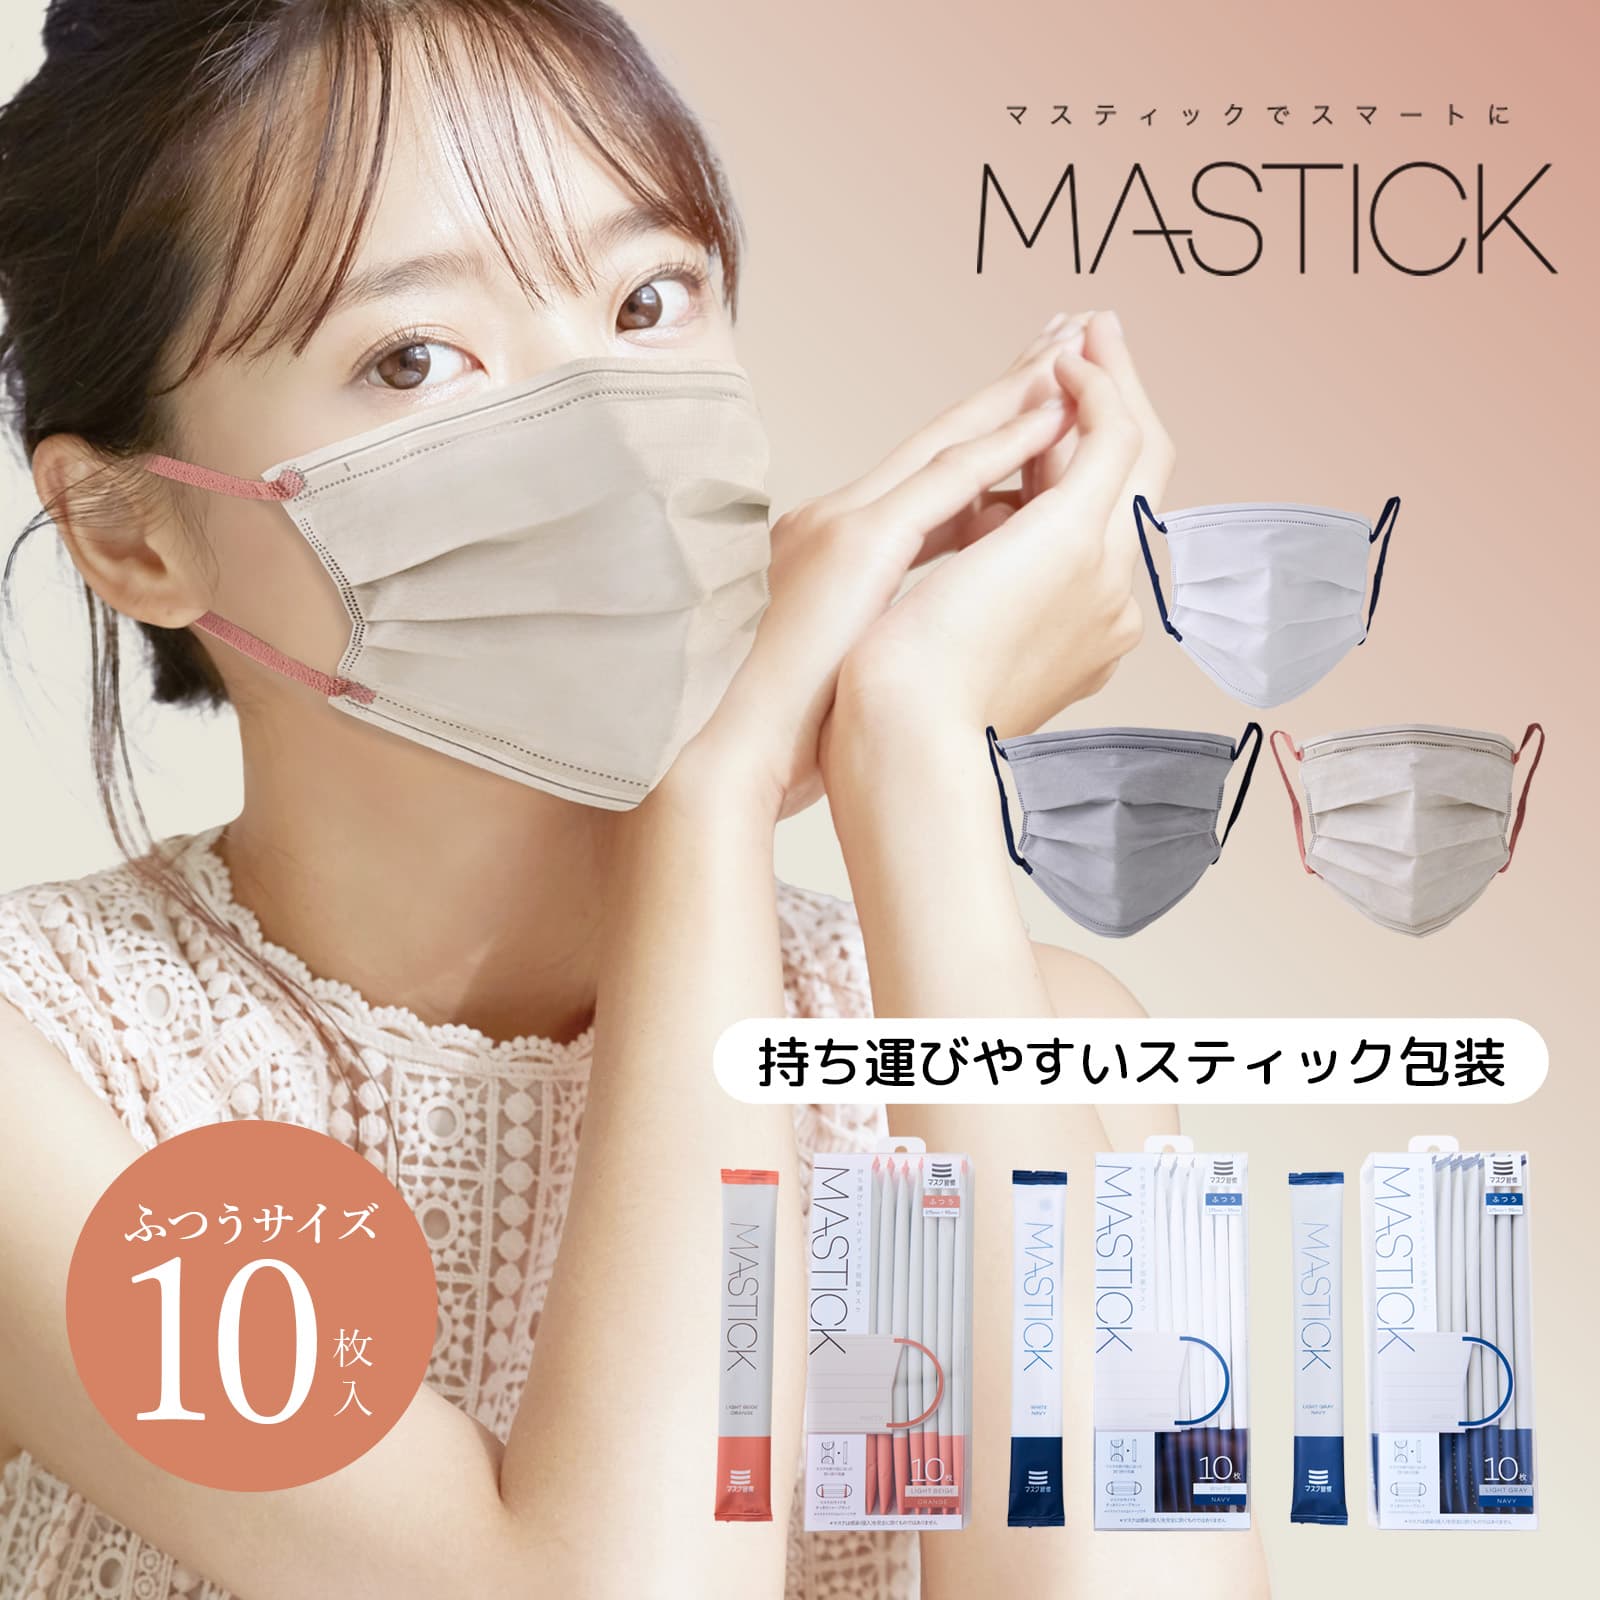 【公式】 マスク 不織布 バイカラー MASTICK 10枚